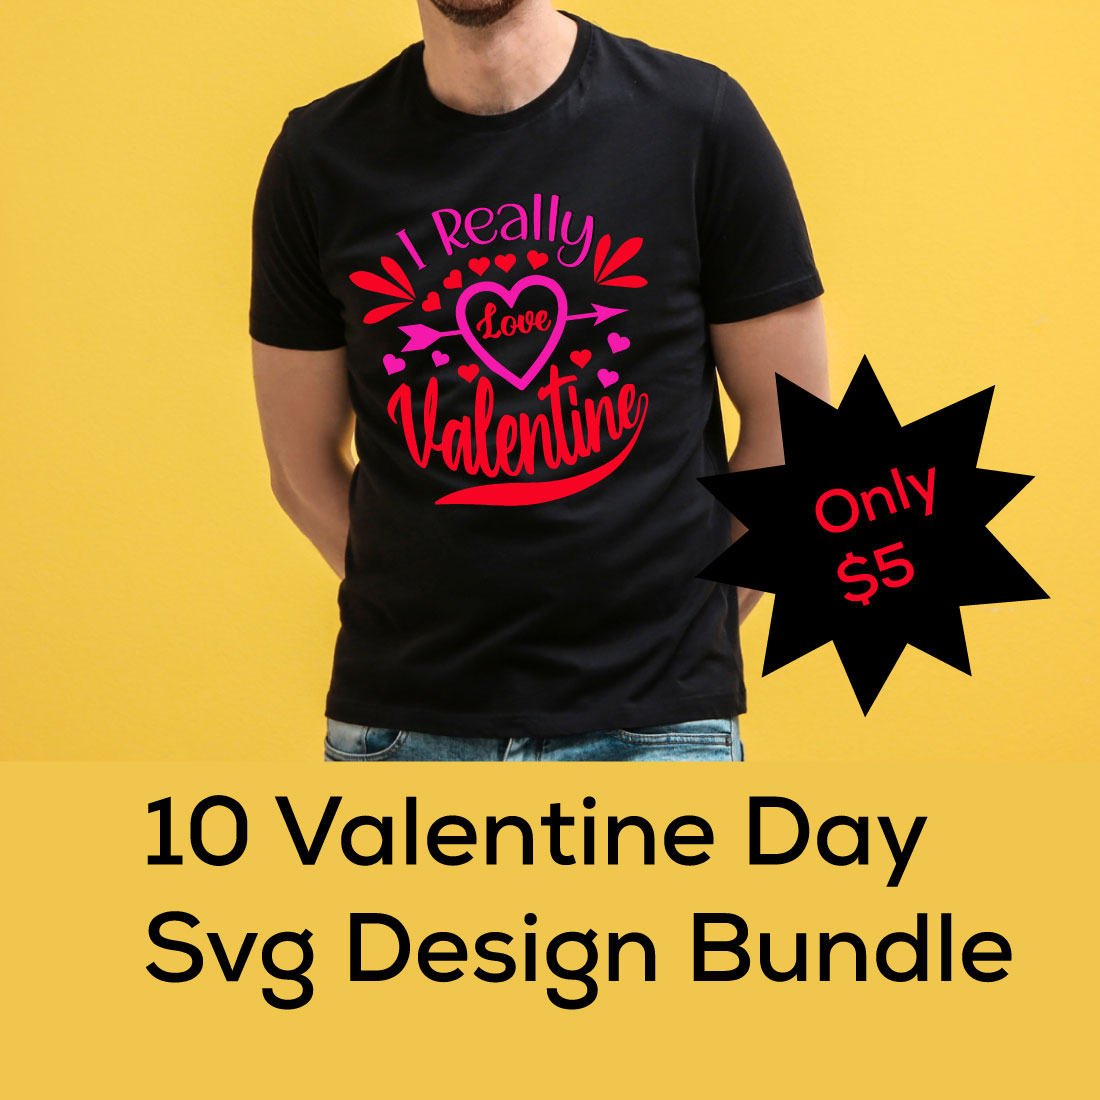 T-shirt Valentine Day SVG Design Bundle cover image.